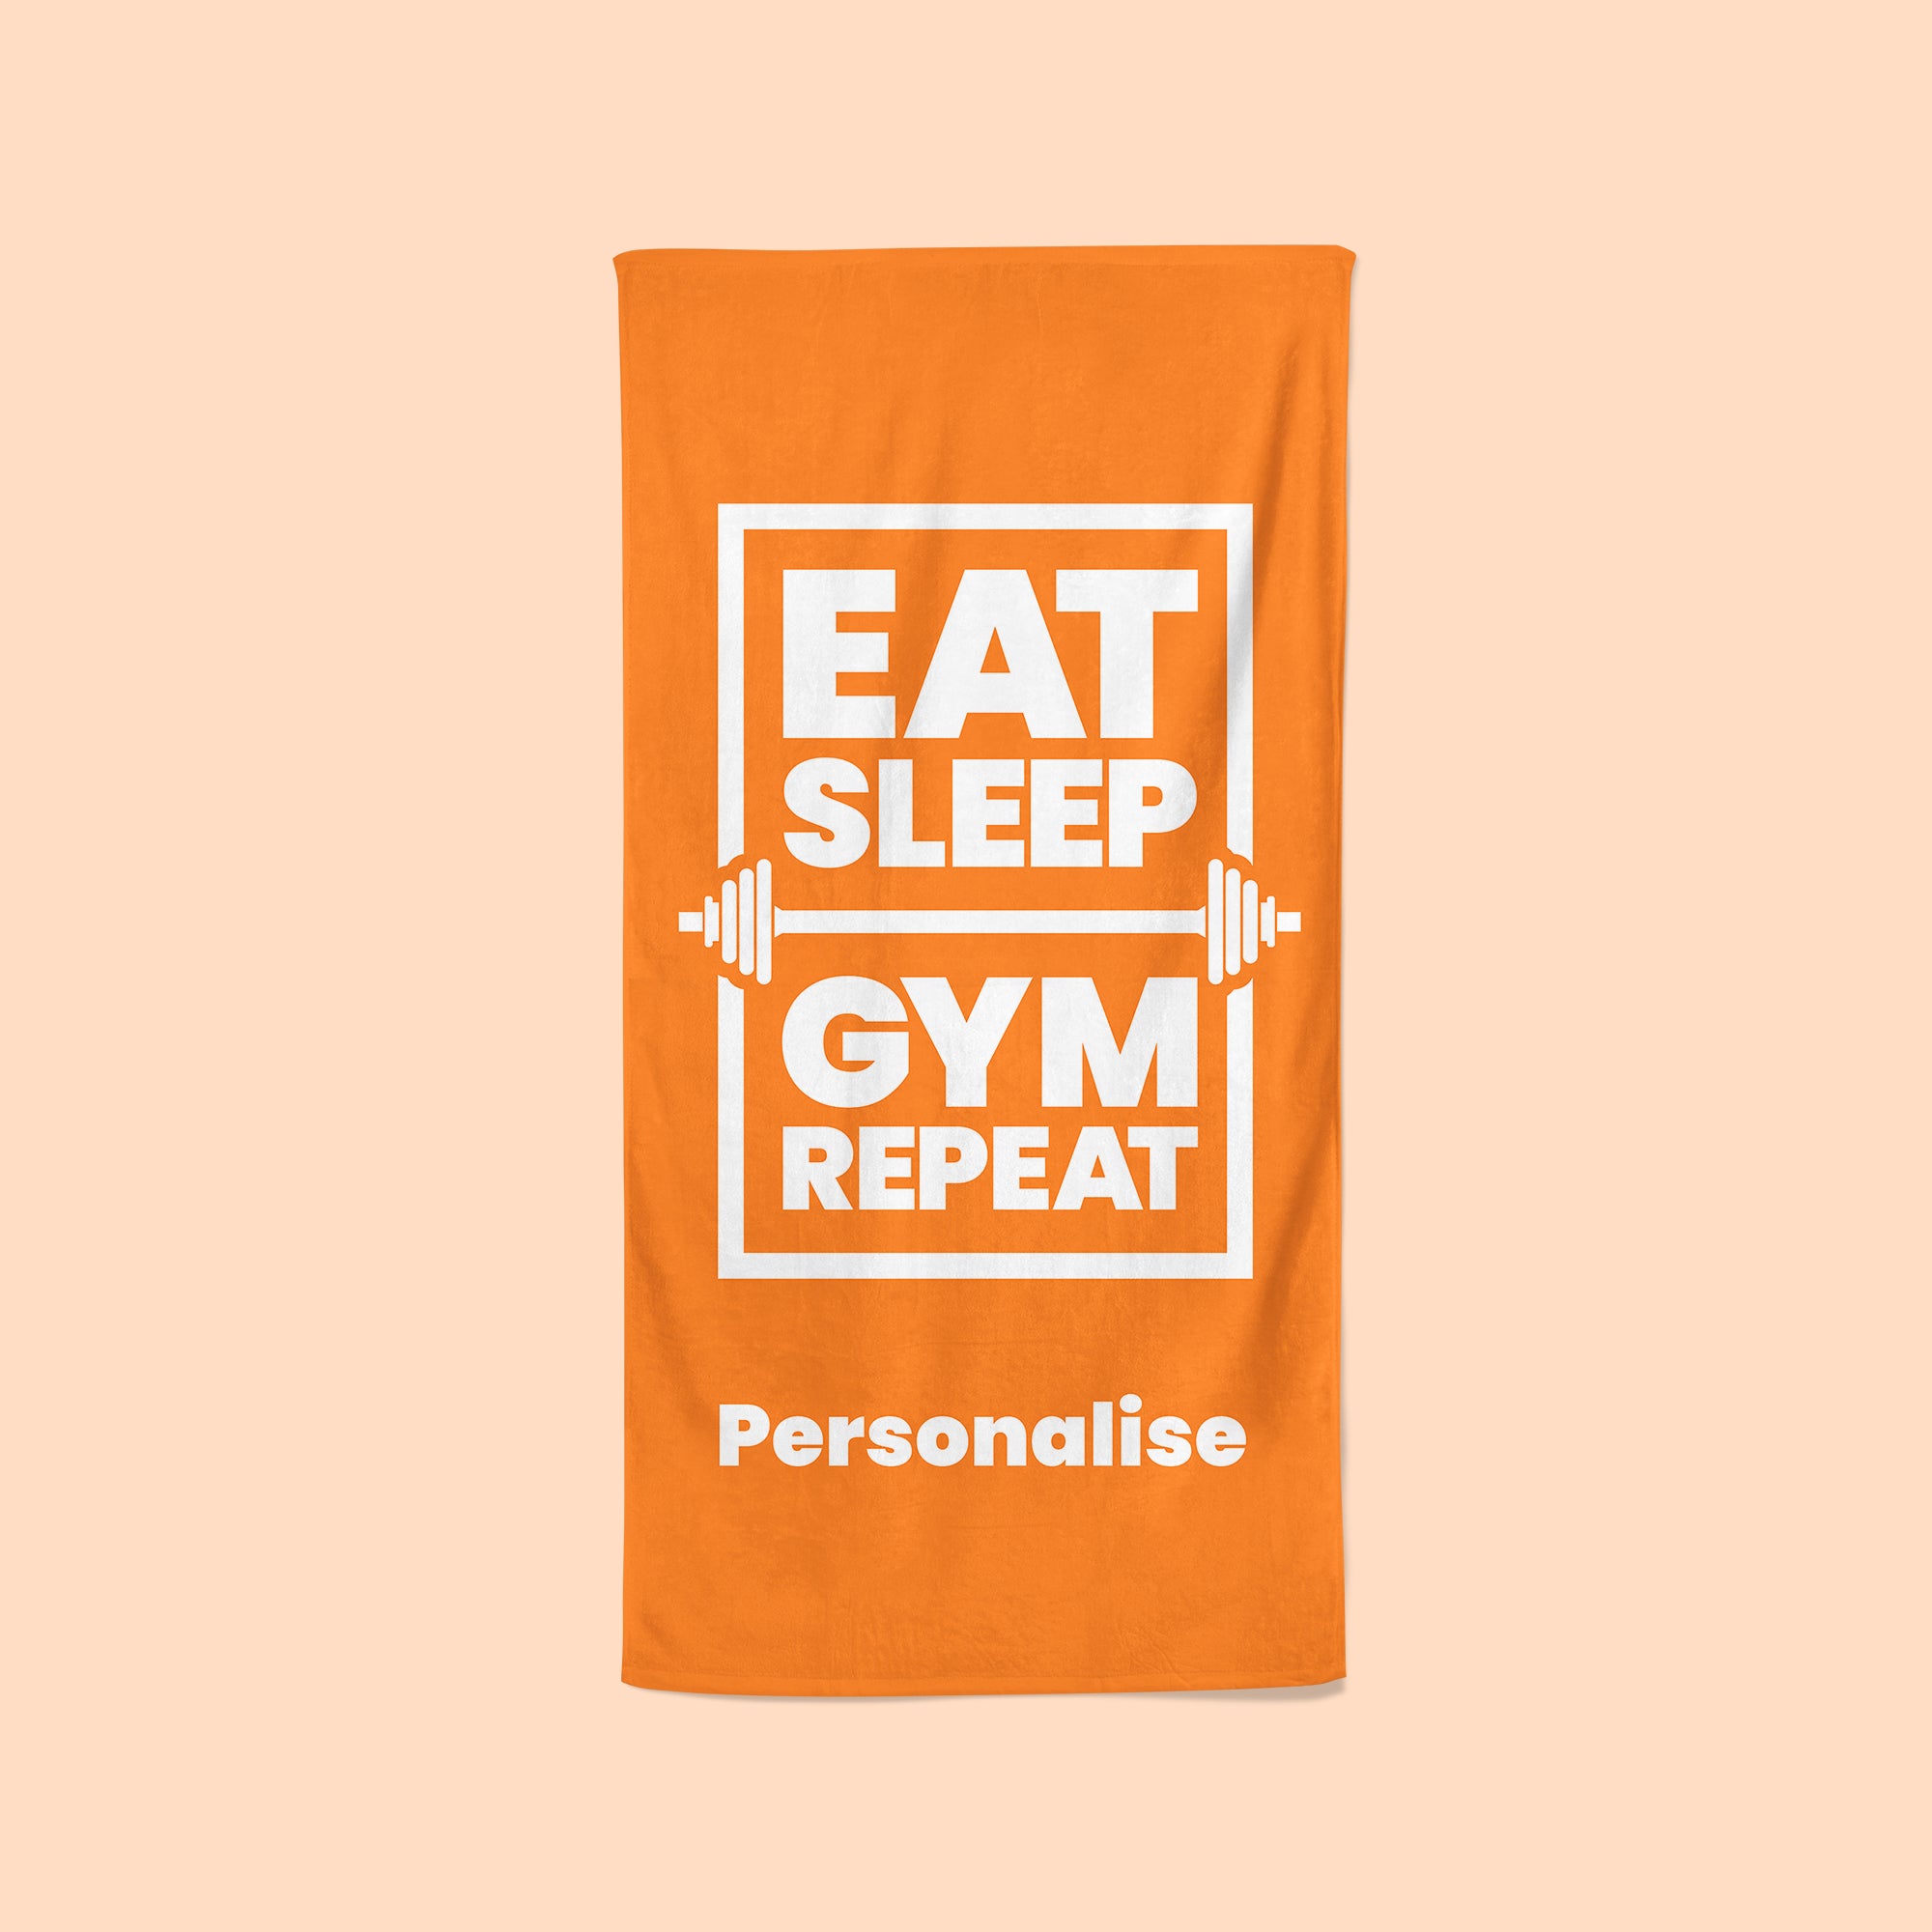 Personalised Orange Gym Towel - Eat, Sleep, Gym, Repeat!